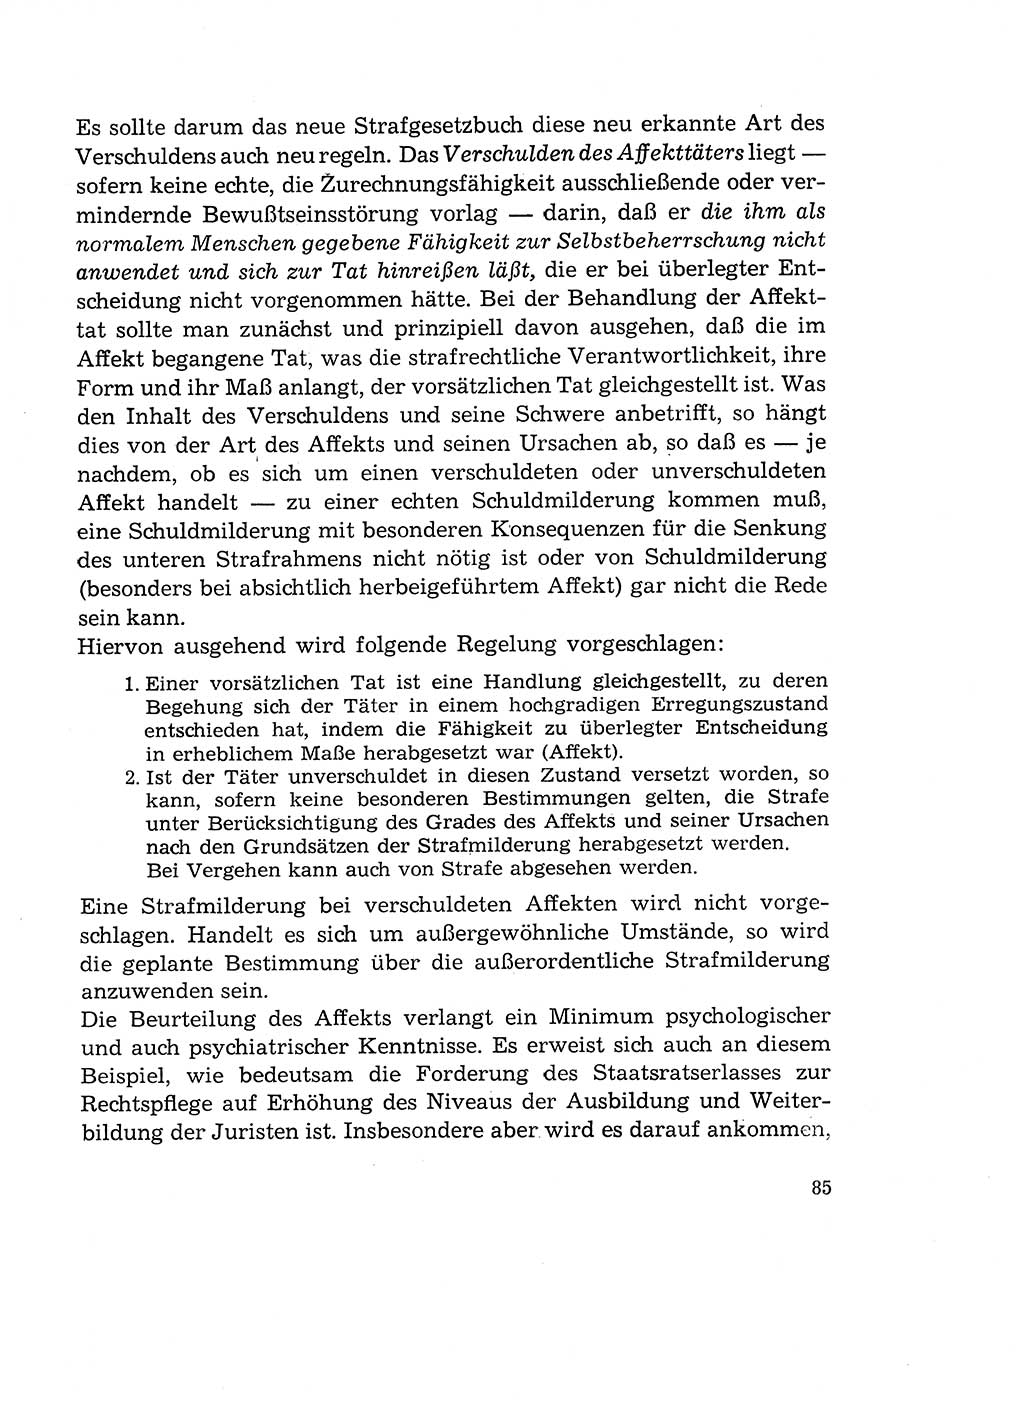 Verantwortung und Schuld im neuen Strafgesetzbuch (StGB) [Deutsche Demokratische Republik (DDR)] 1964, Seite 85 (Verantw. Sch. StGB DDR 1964, S. 85)